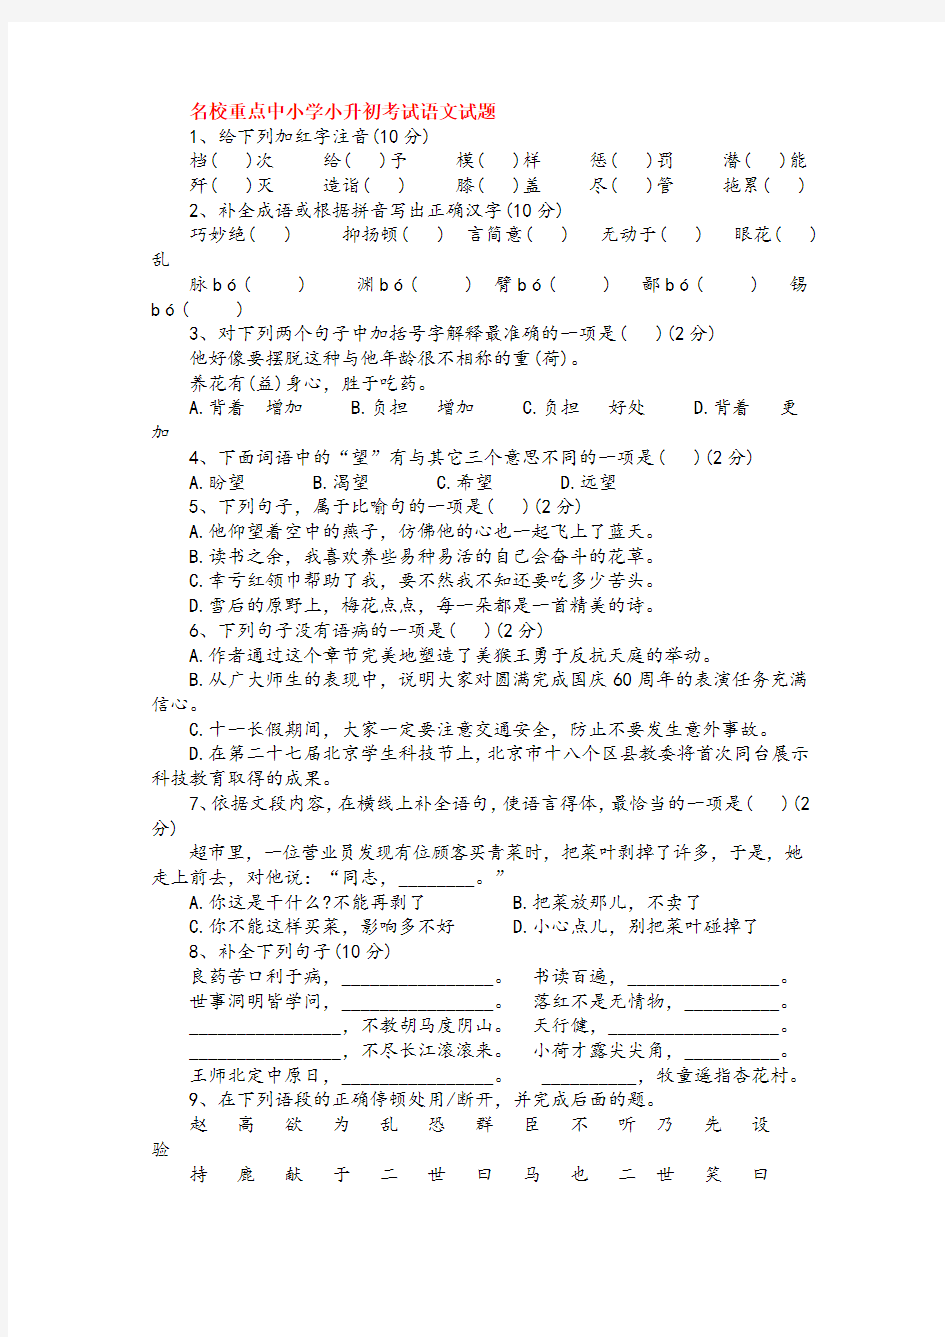 2019年深圳市小升初语文模拟试题(共5套)详细答案优质试卷